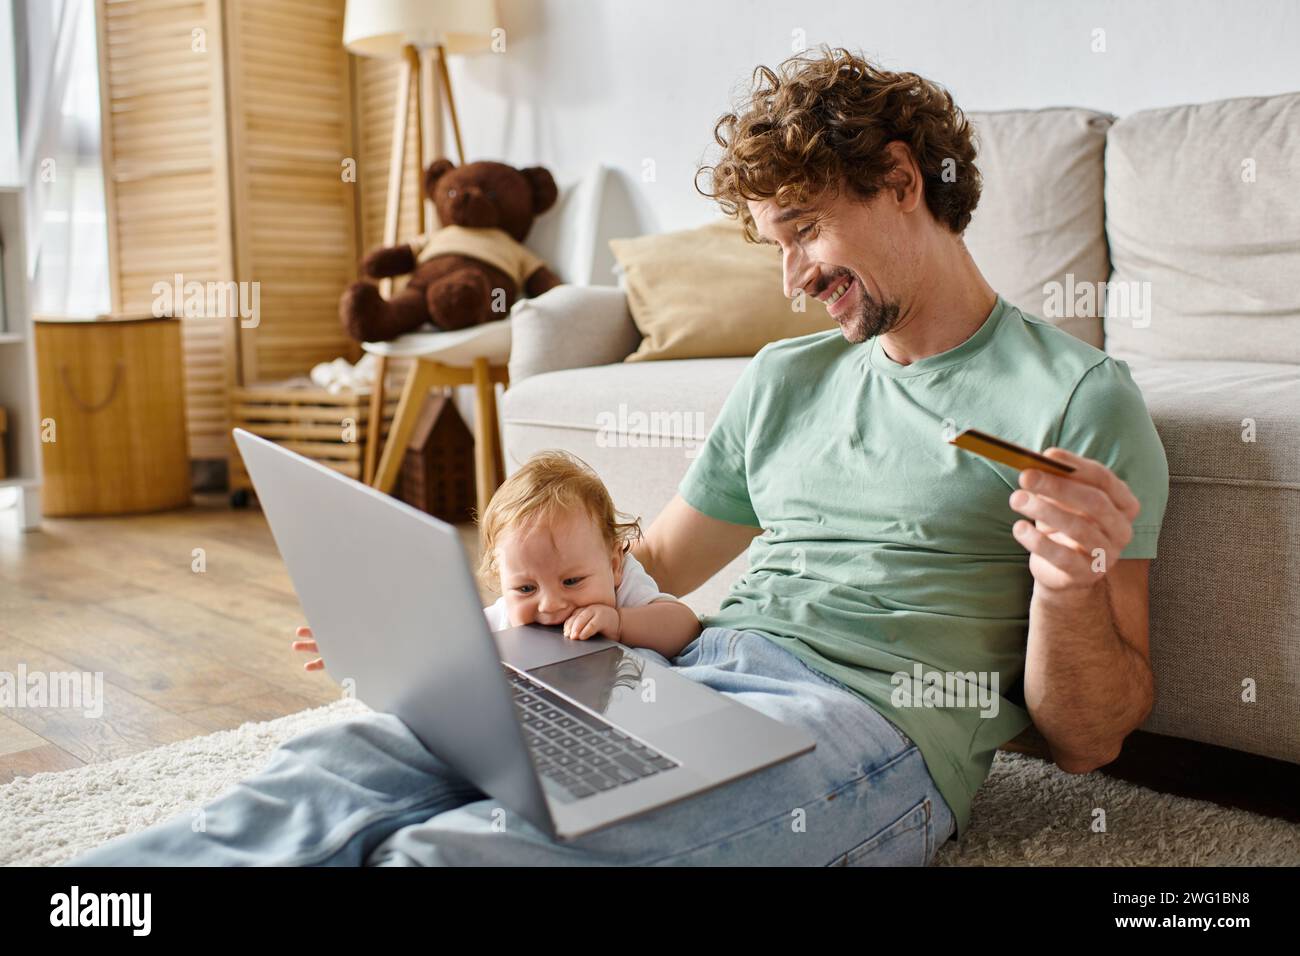 Glücklicher Mann mit lockigen Haaren, der Kreditkarte hält, während er online in der Nähe des kleinen Jungen im Wohnzimmer einkaufen kann Stockfoto